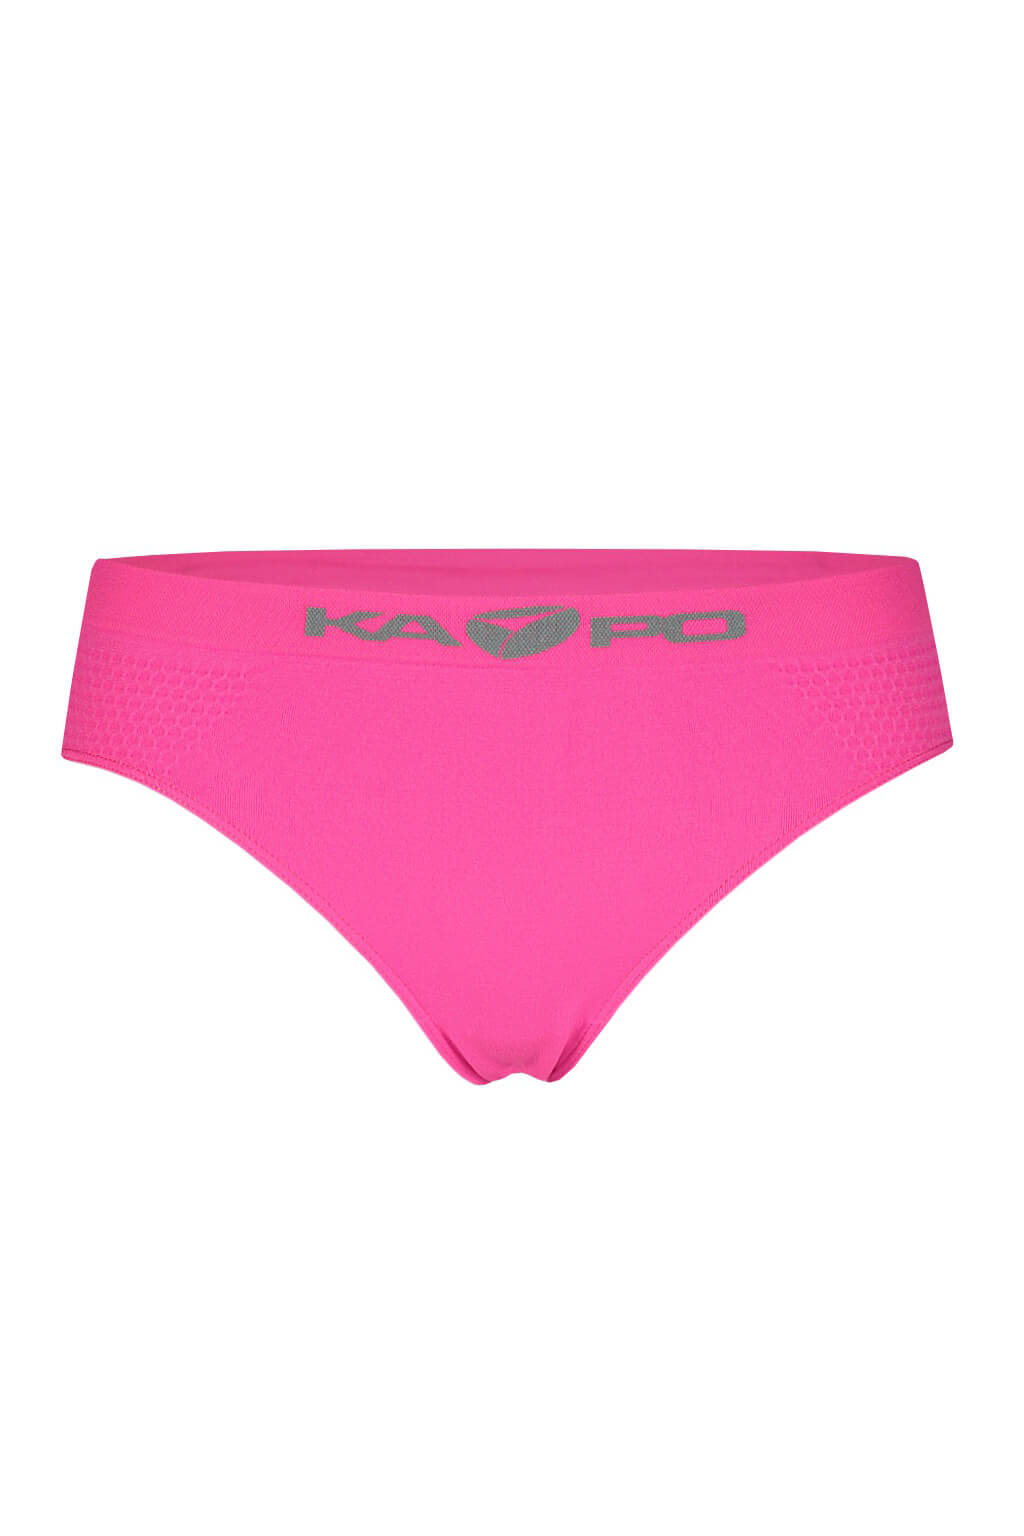 KAPO sportovní funkční kalhotky XL zářivě růžová